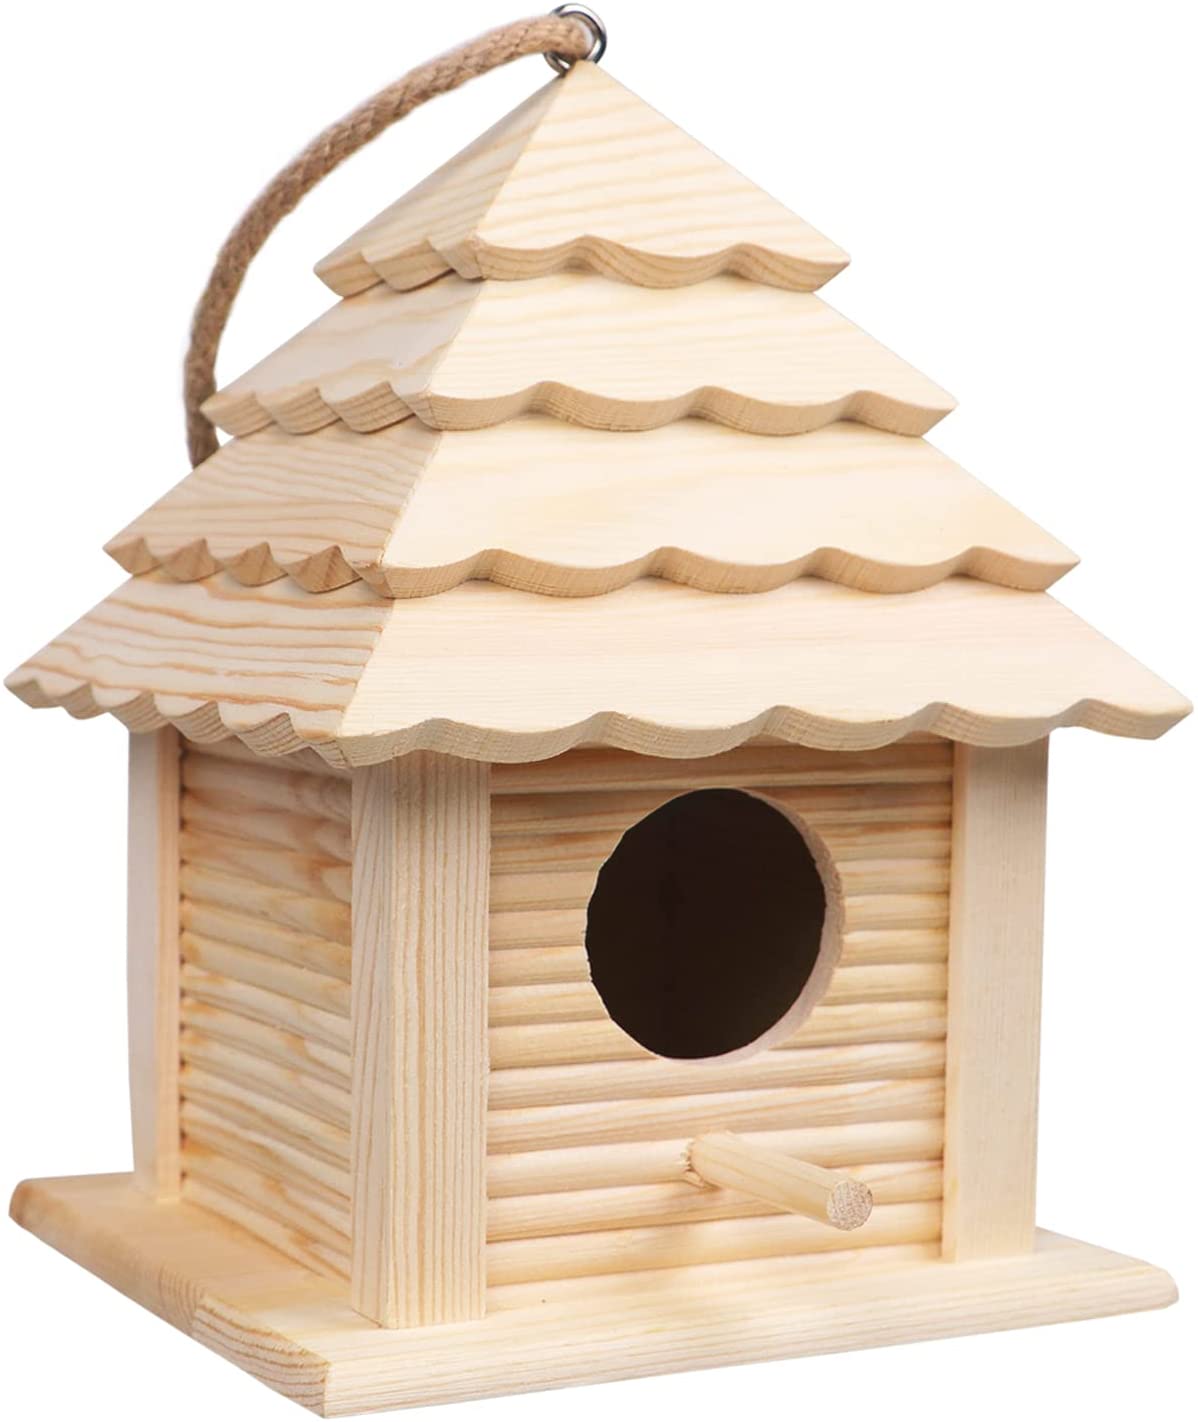 Wooden Garden Birdhouse for Finch Bluebird Cardinals